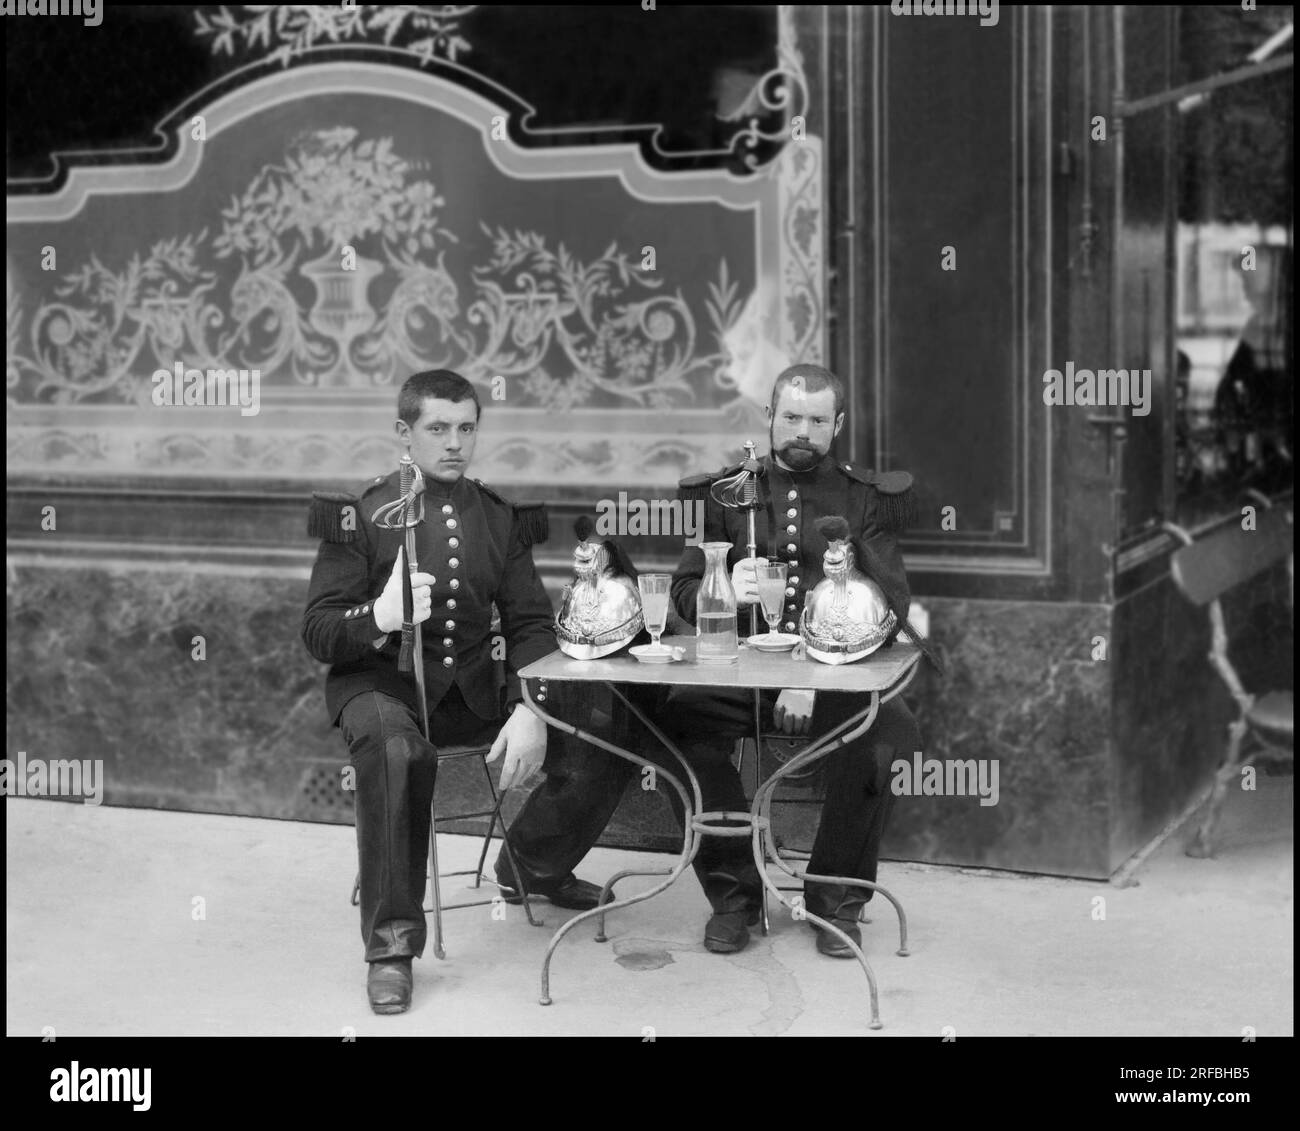 Portraits de deux jeunes militaires en uniforme, a la terrasse d'un Cafe. Photographie, Vers 1870-1886, de Paul Emile Theodore Ducos (1849-1913). Stockfoto